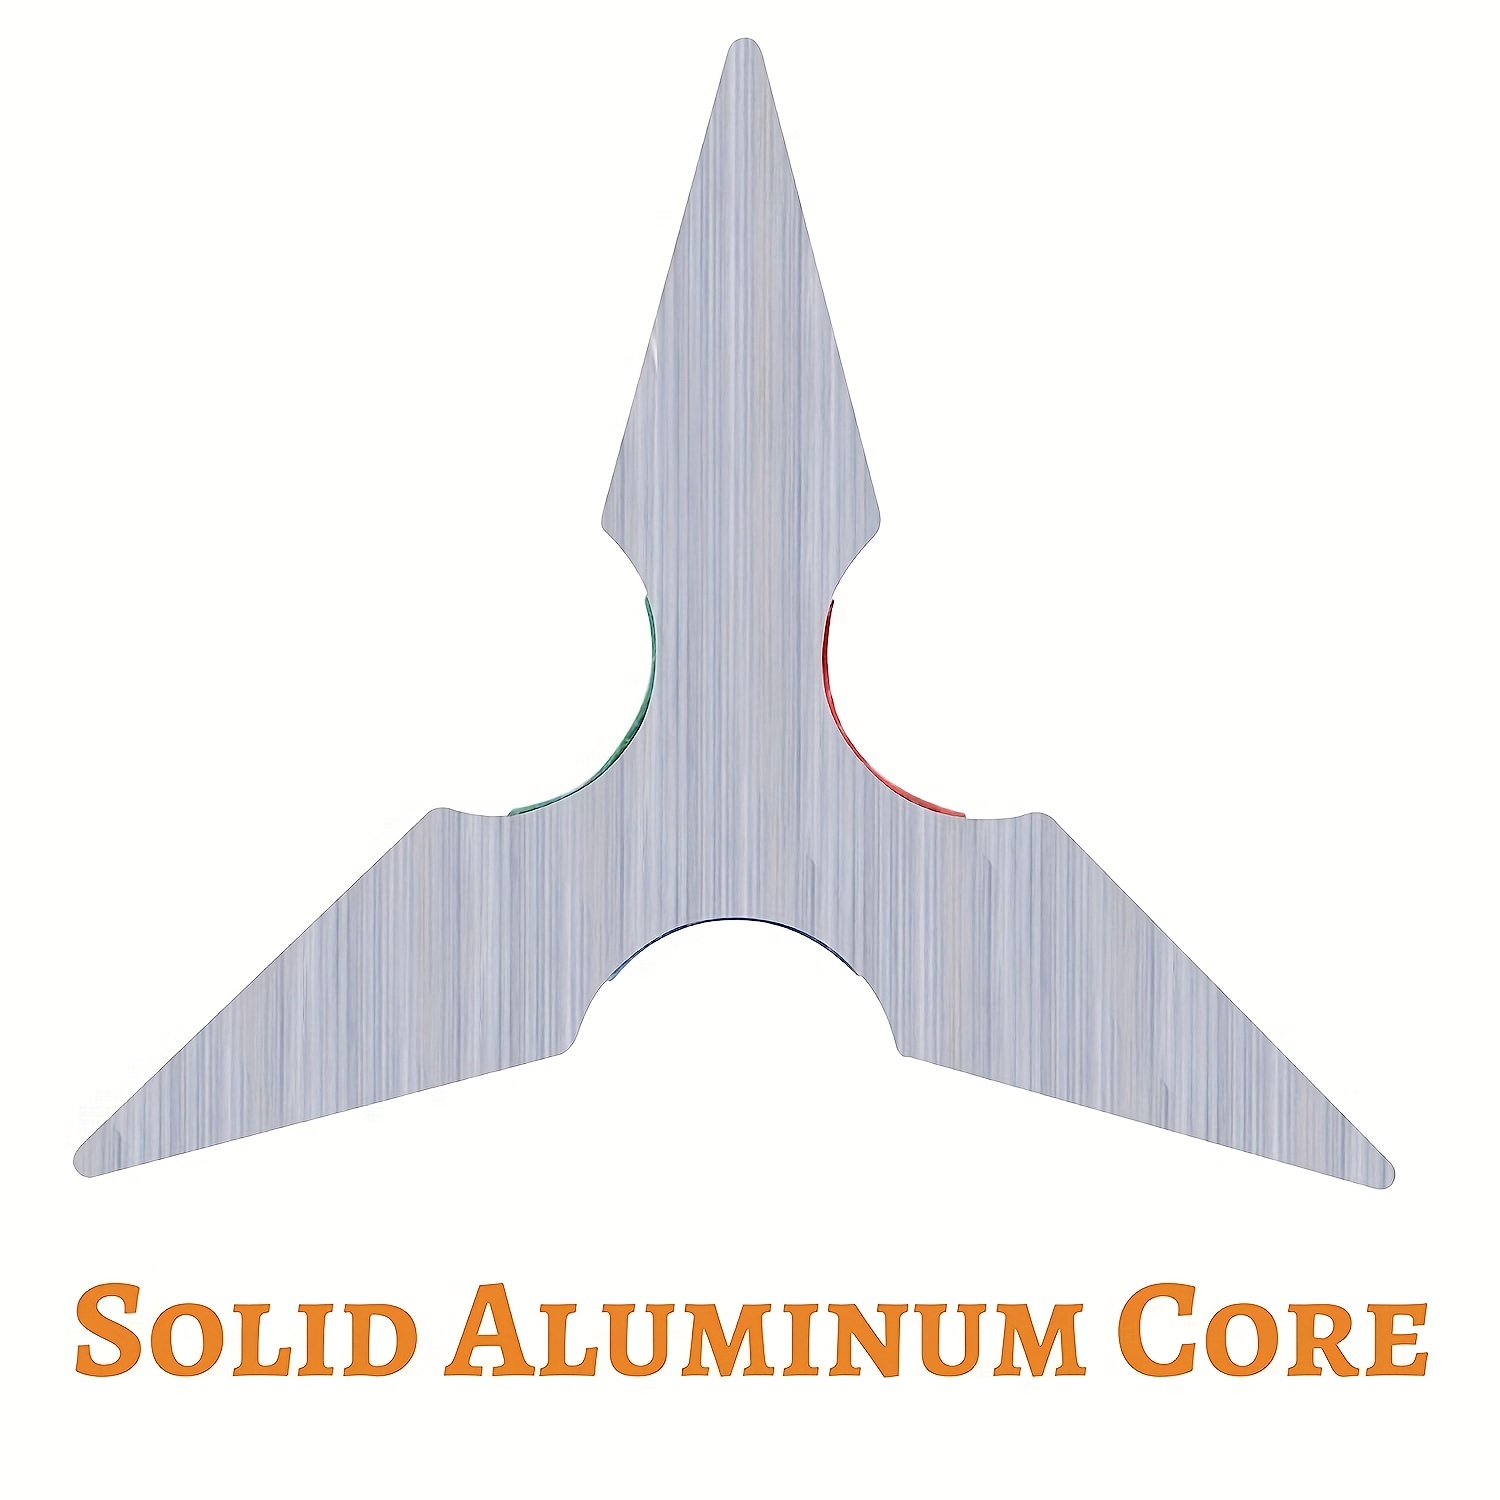 Aluminum Architect Scale - 6 - Color Coded - Sam Flax Atlanta